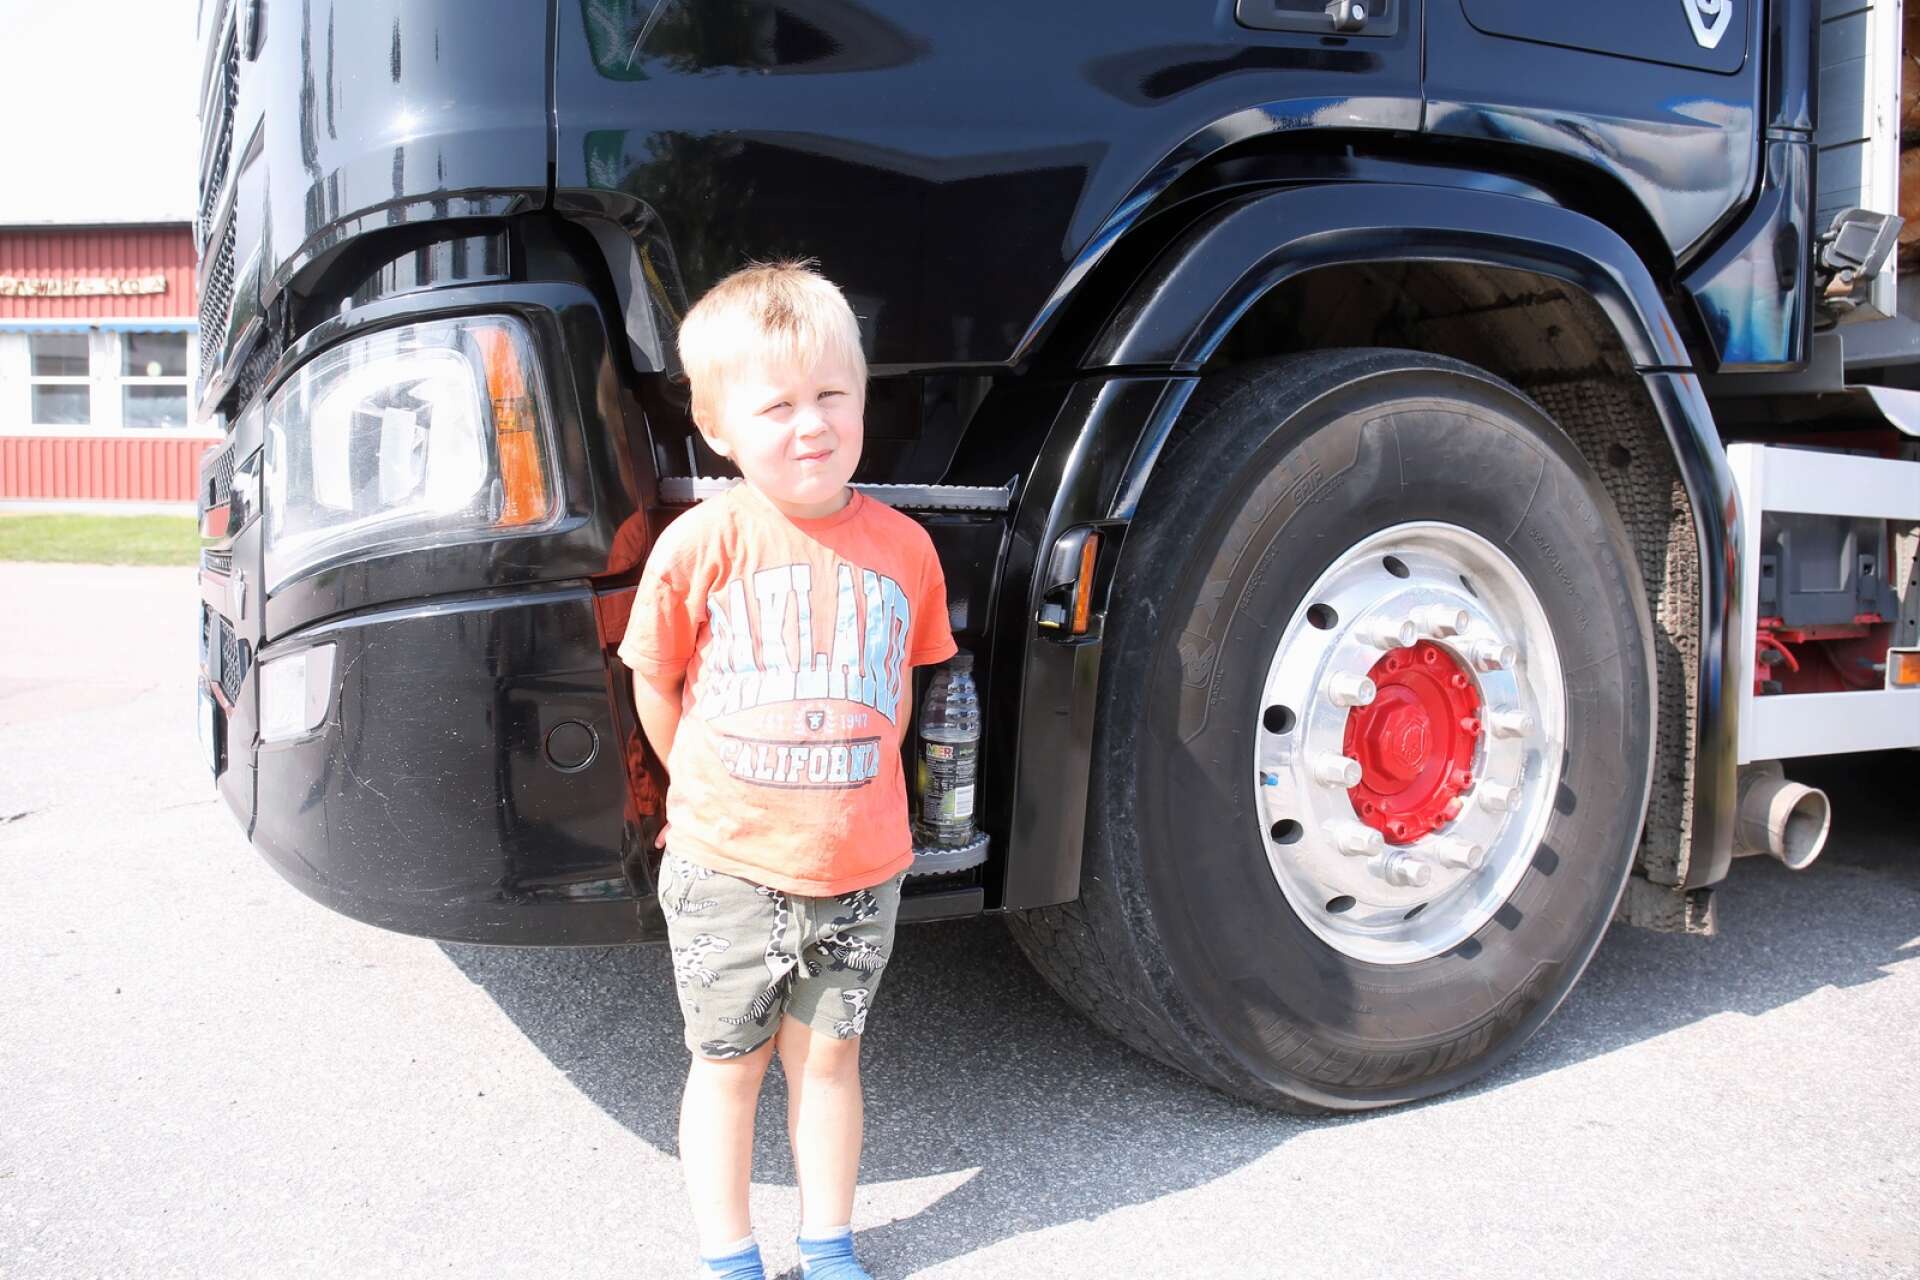 Snart treårige Emil Kalnäs går i pappa Henrics fotspår. Han gillar lastbilar, traktorer och maskiner och har nog framtiden utstakad som timmerbilschaufför